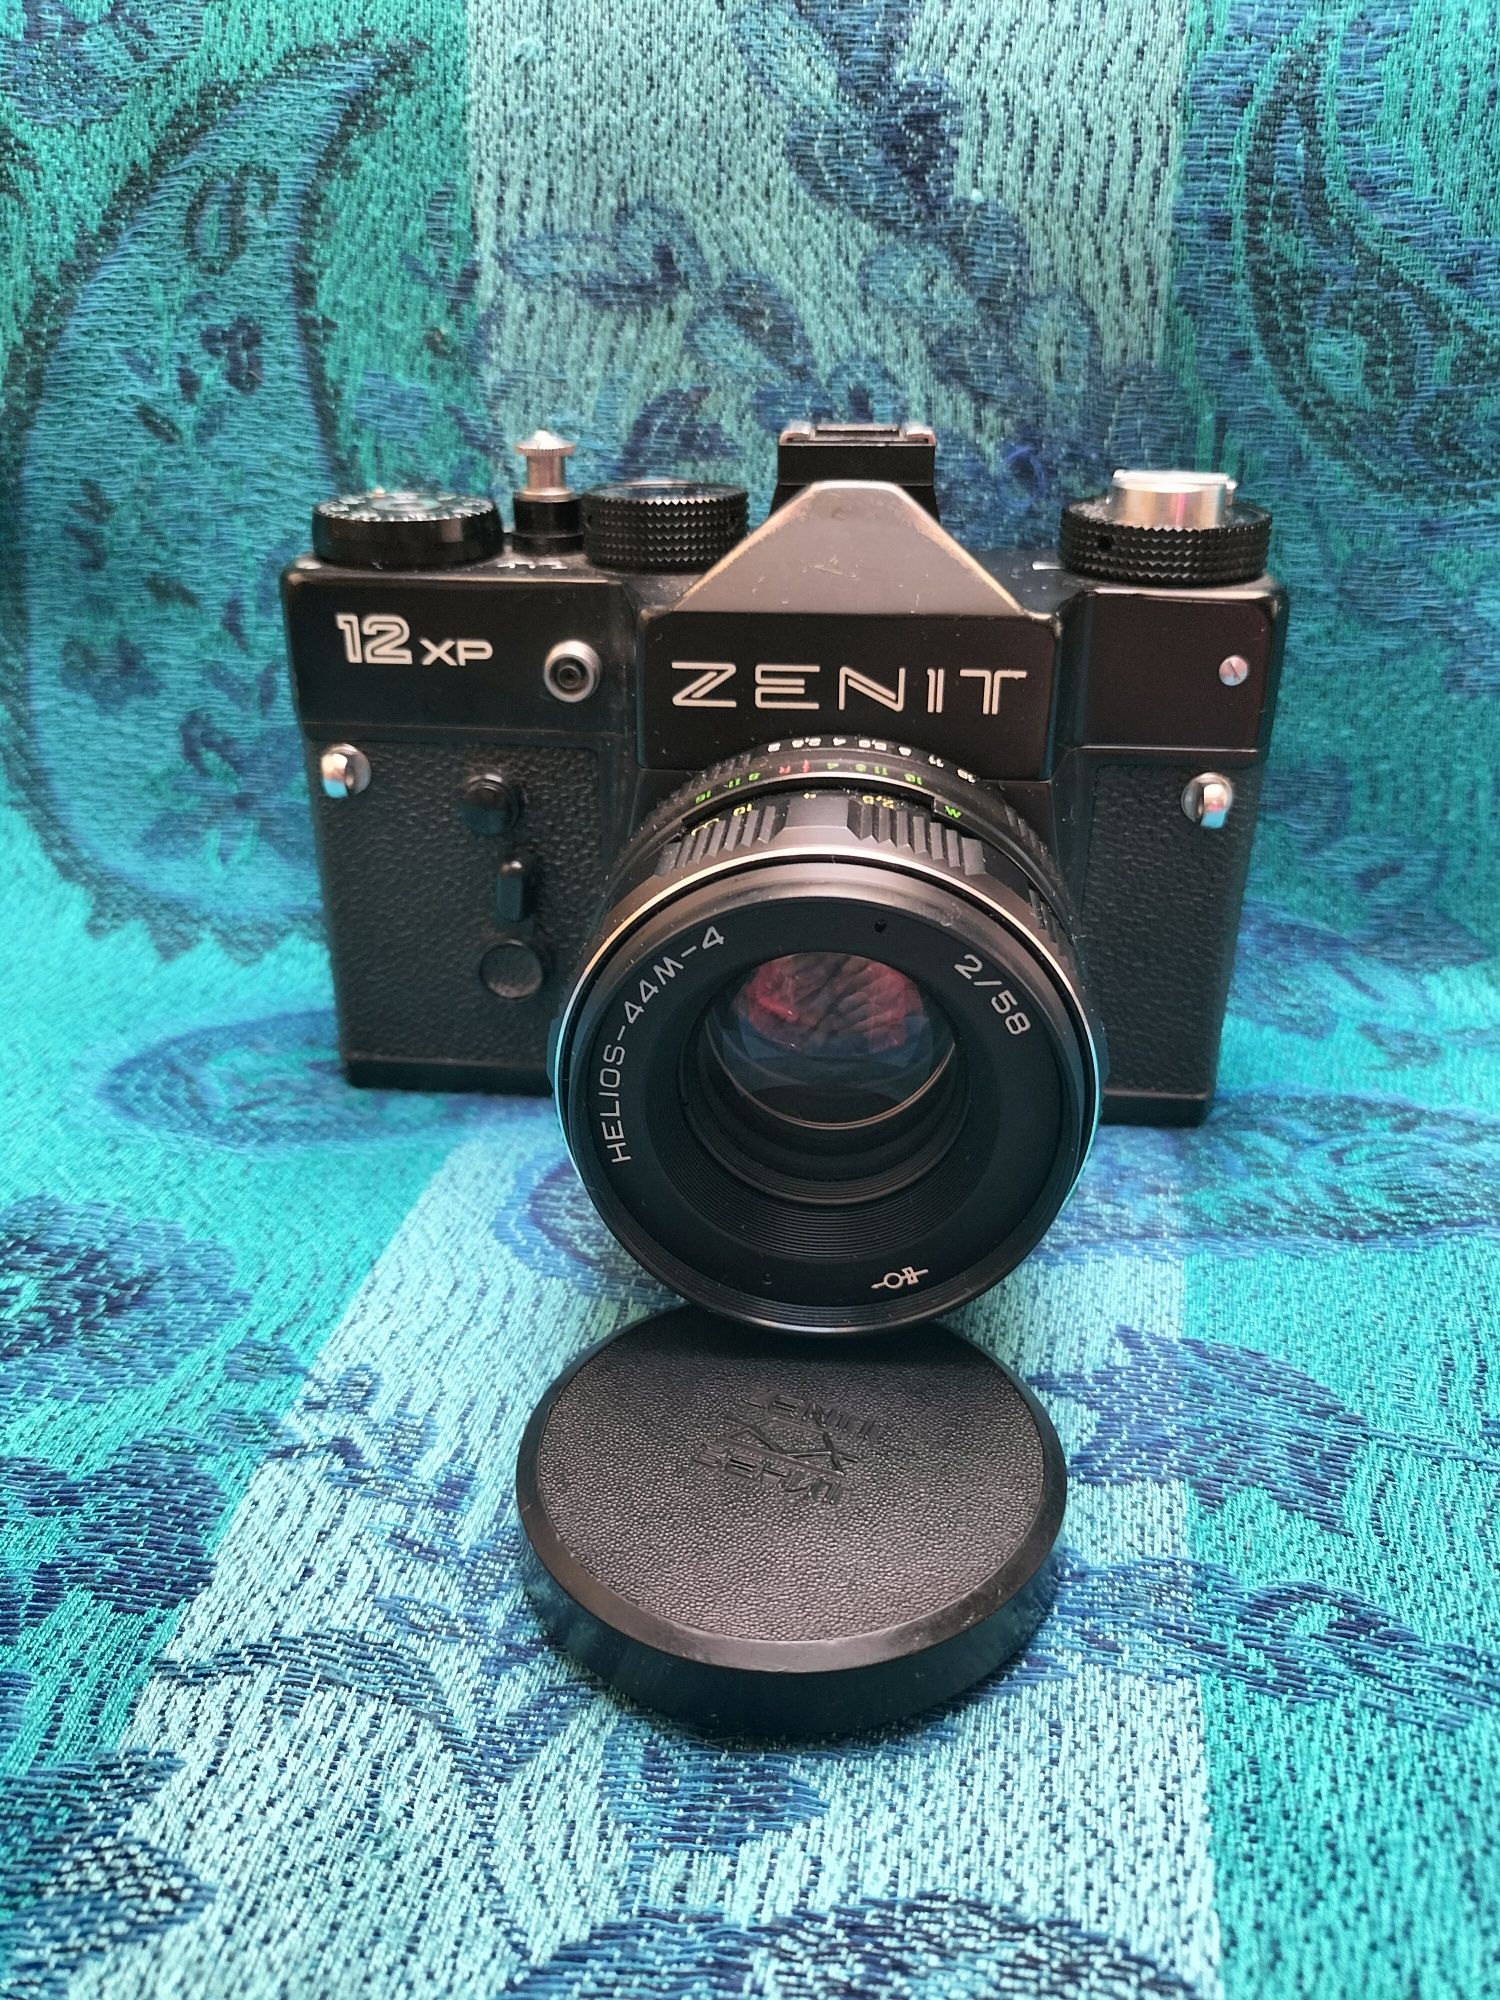 Aparat fotograficzny Zenit 12xp z futerałem